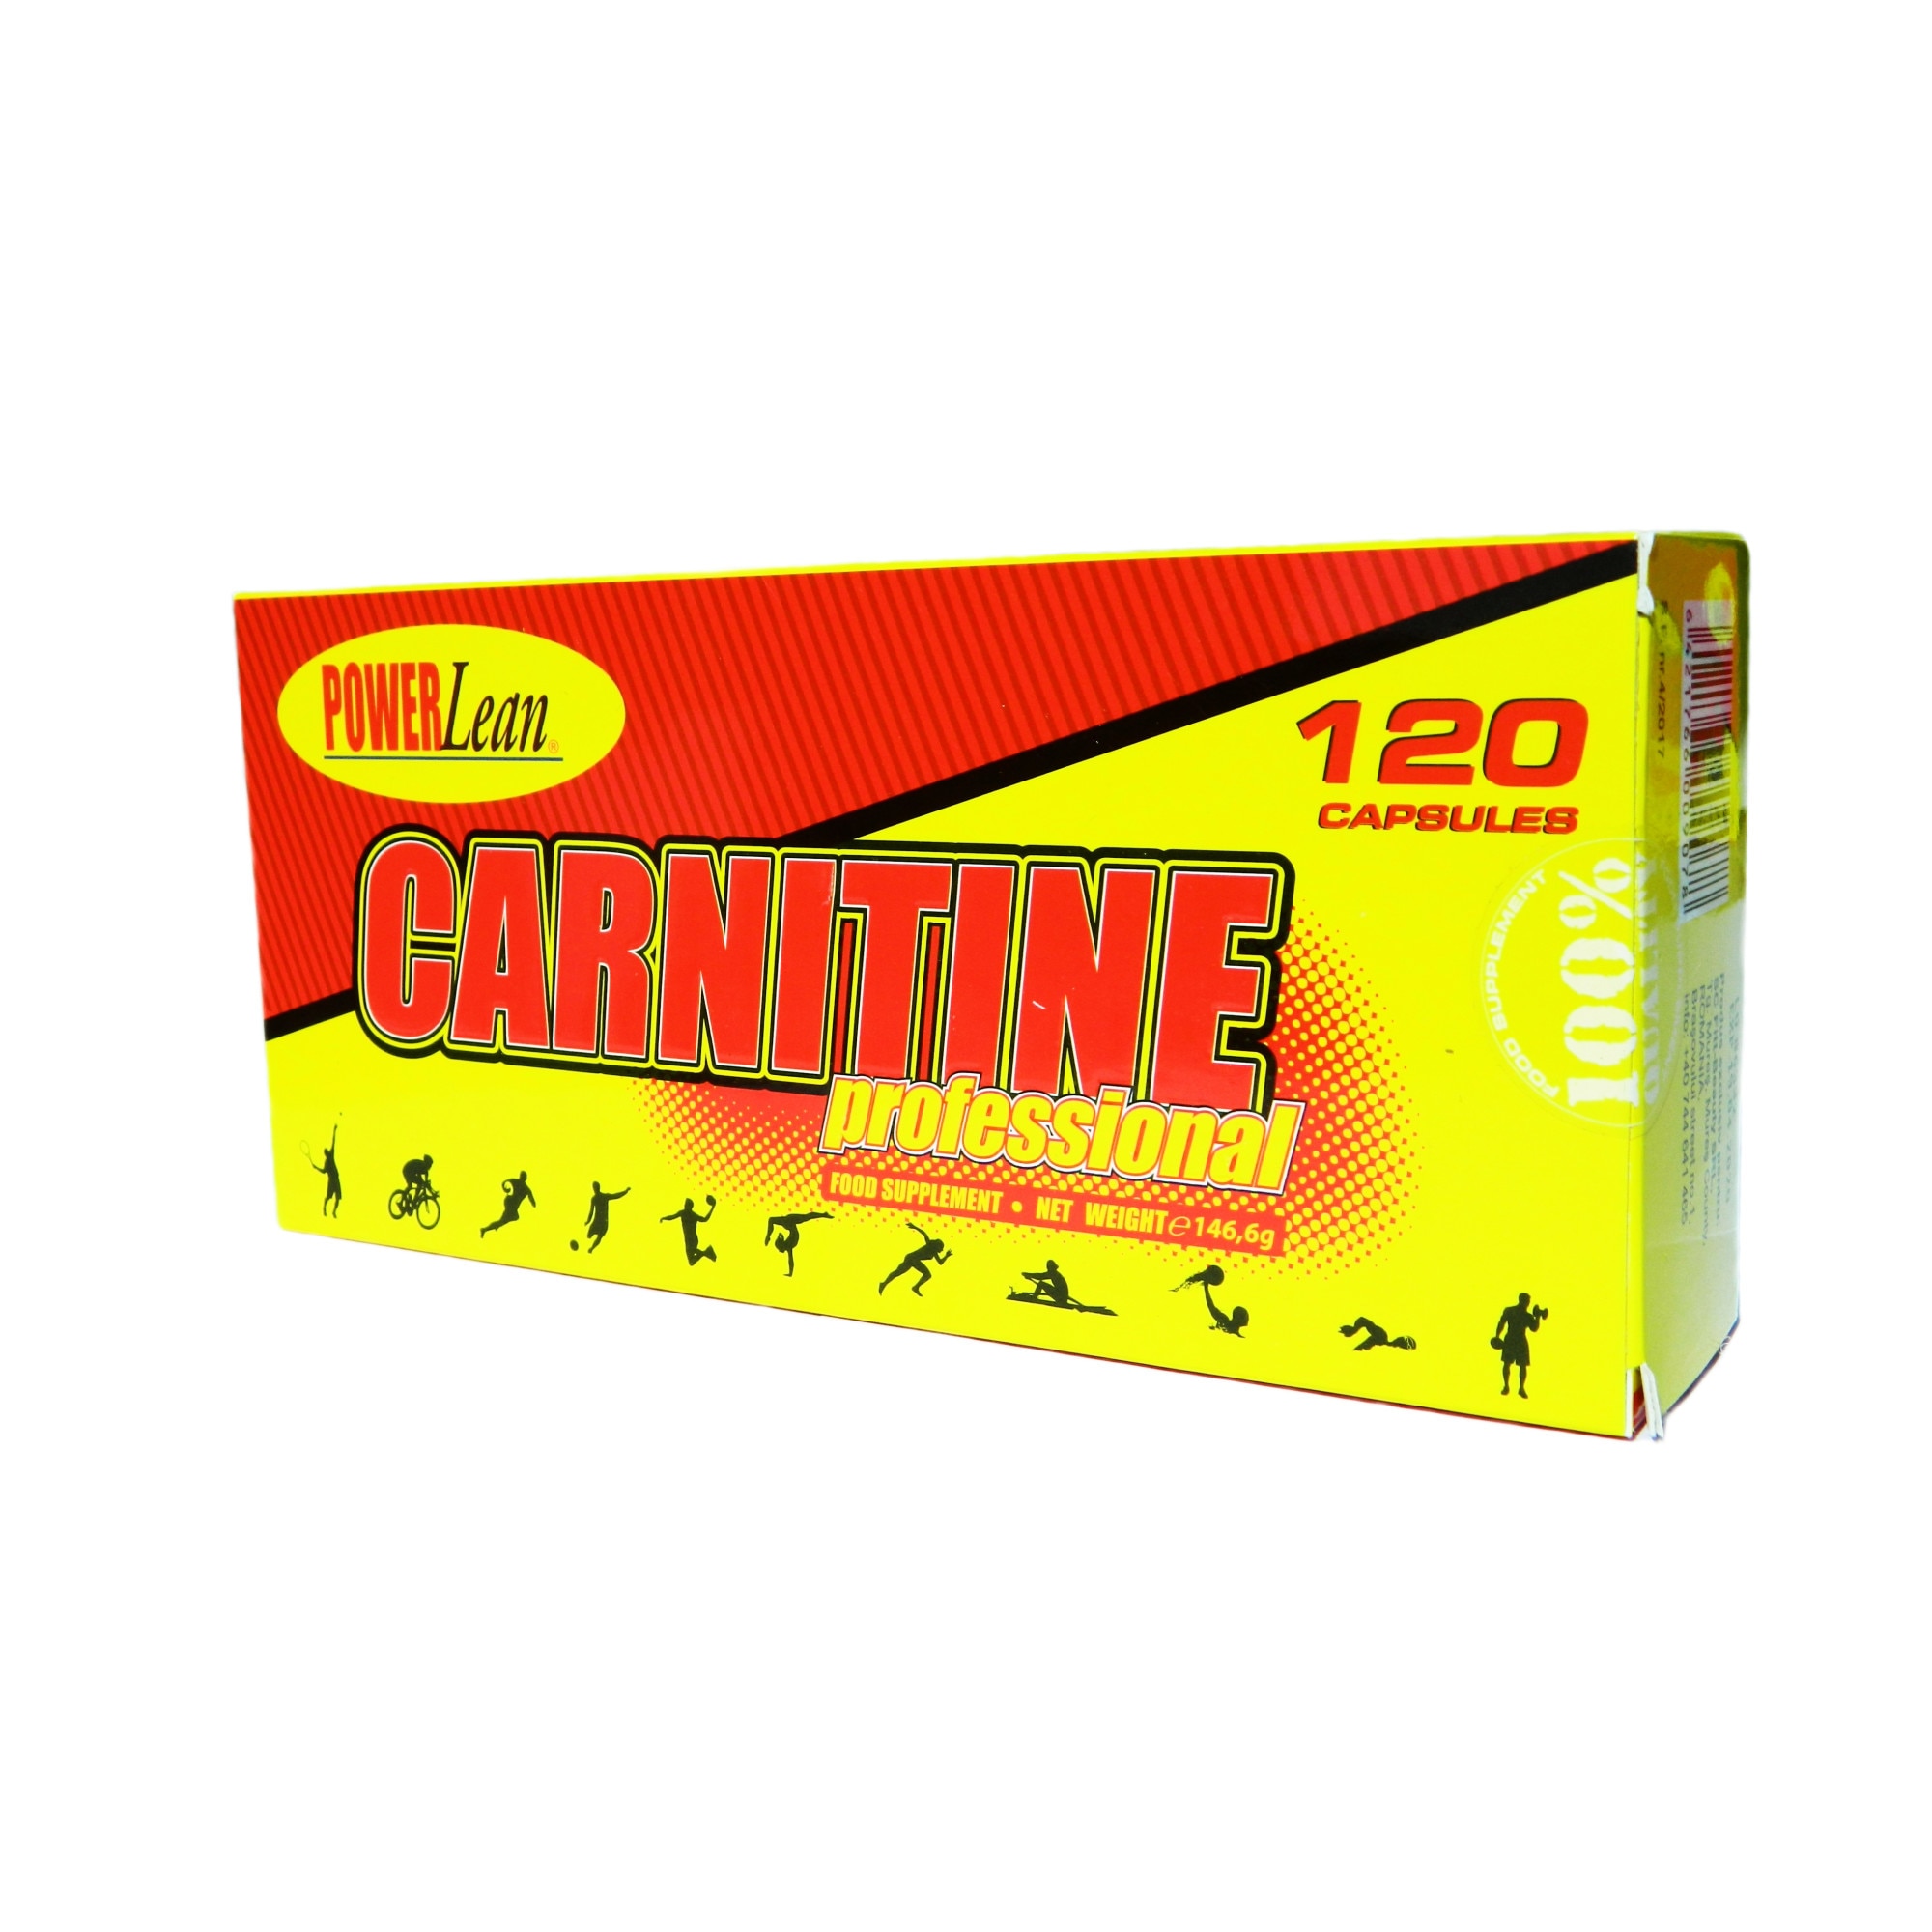 pastile de slabit l- carnitine